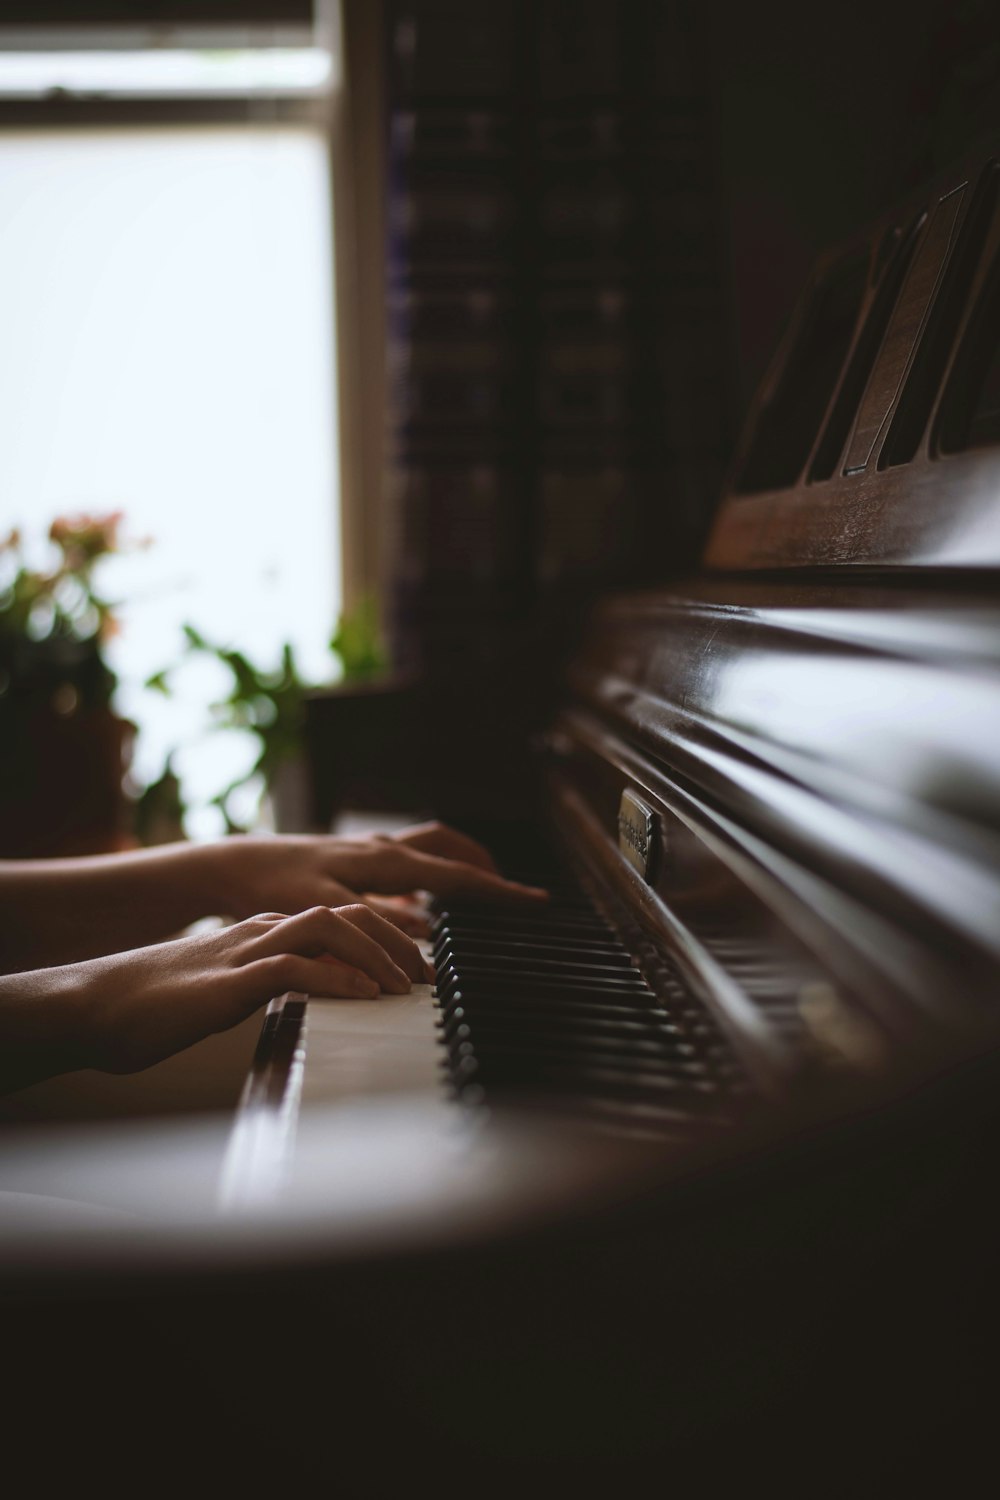 Klavier spielende Person in der Graustufenfotografie